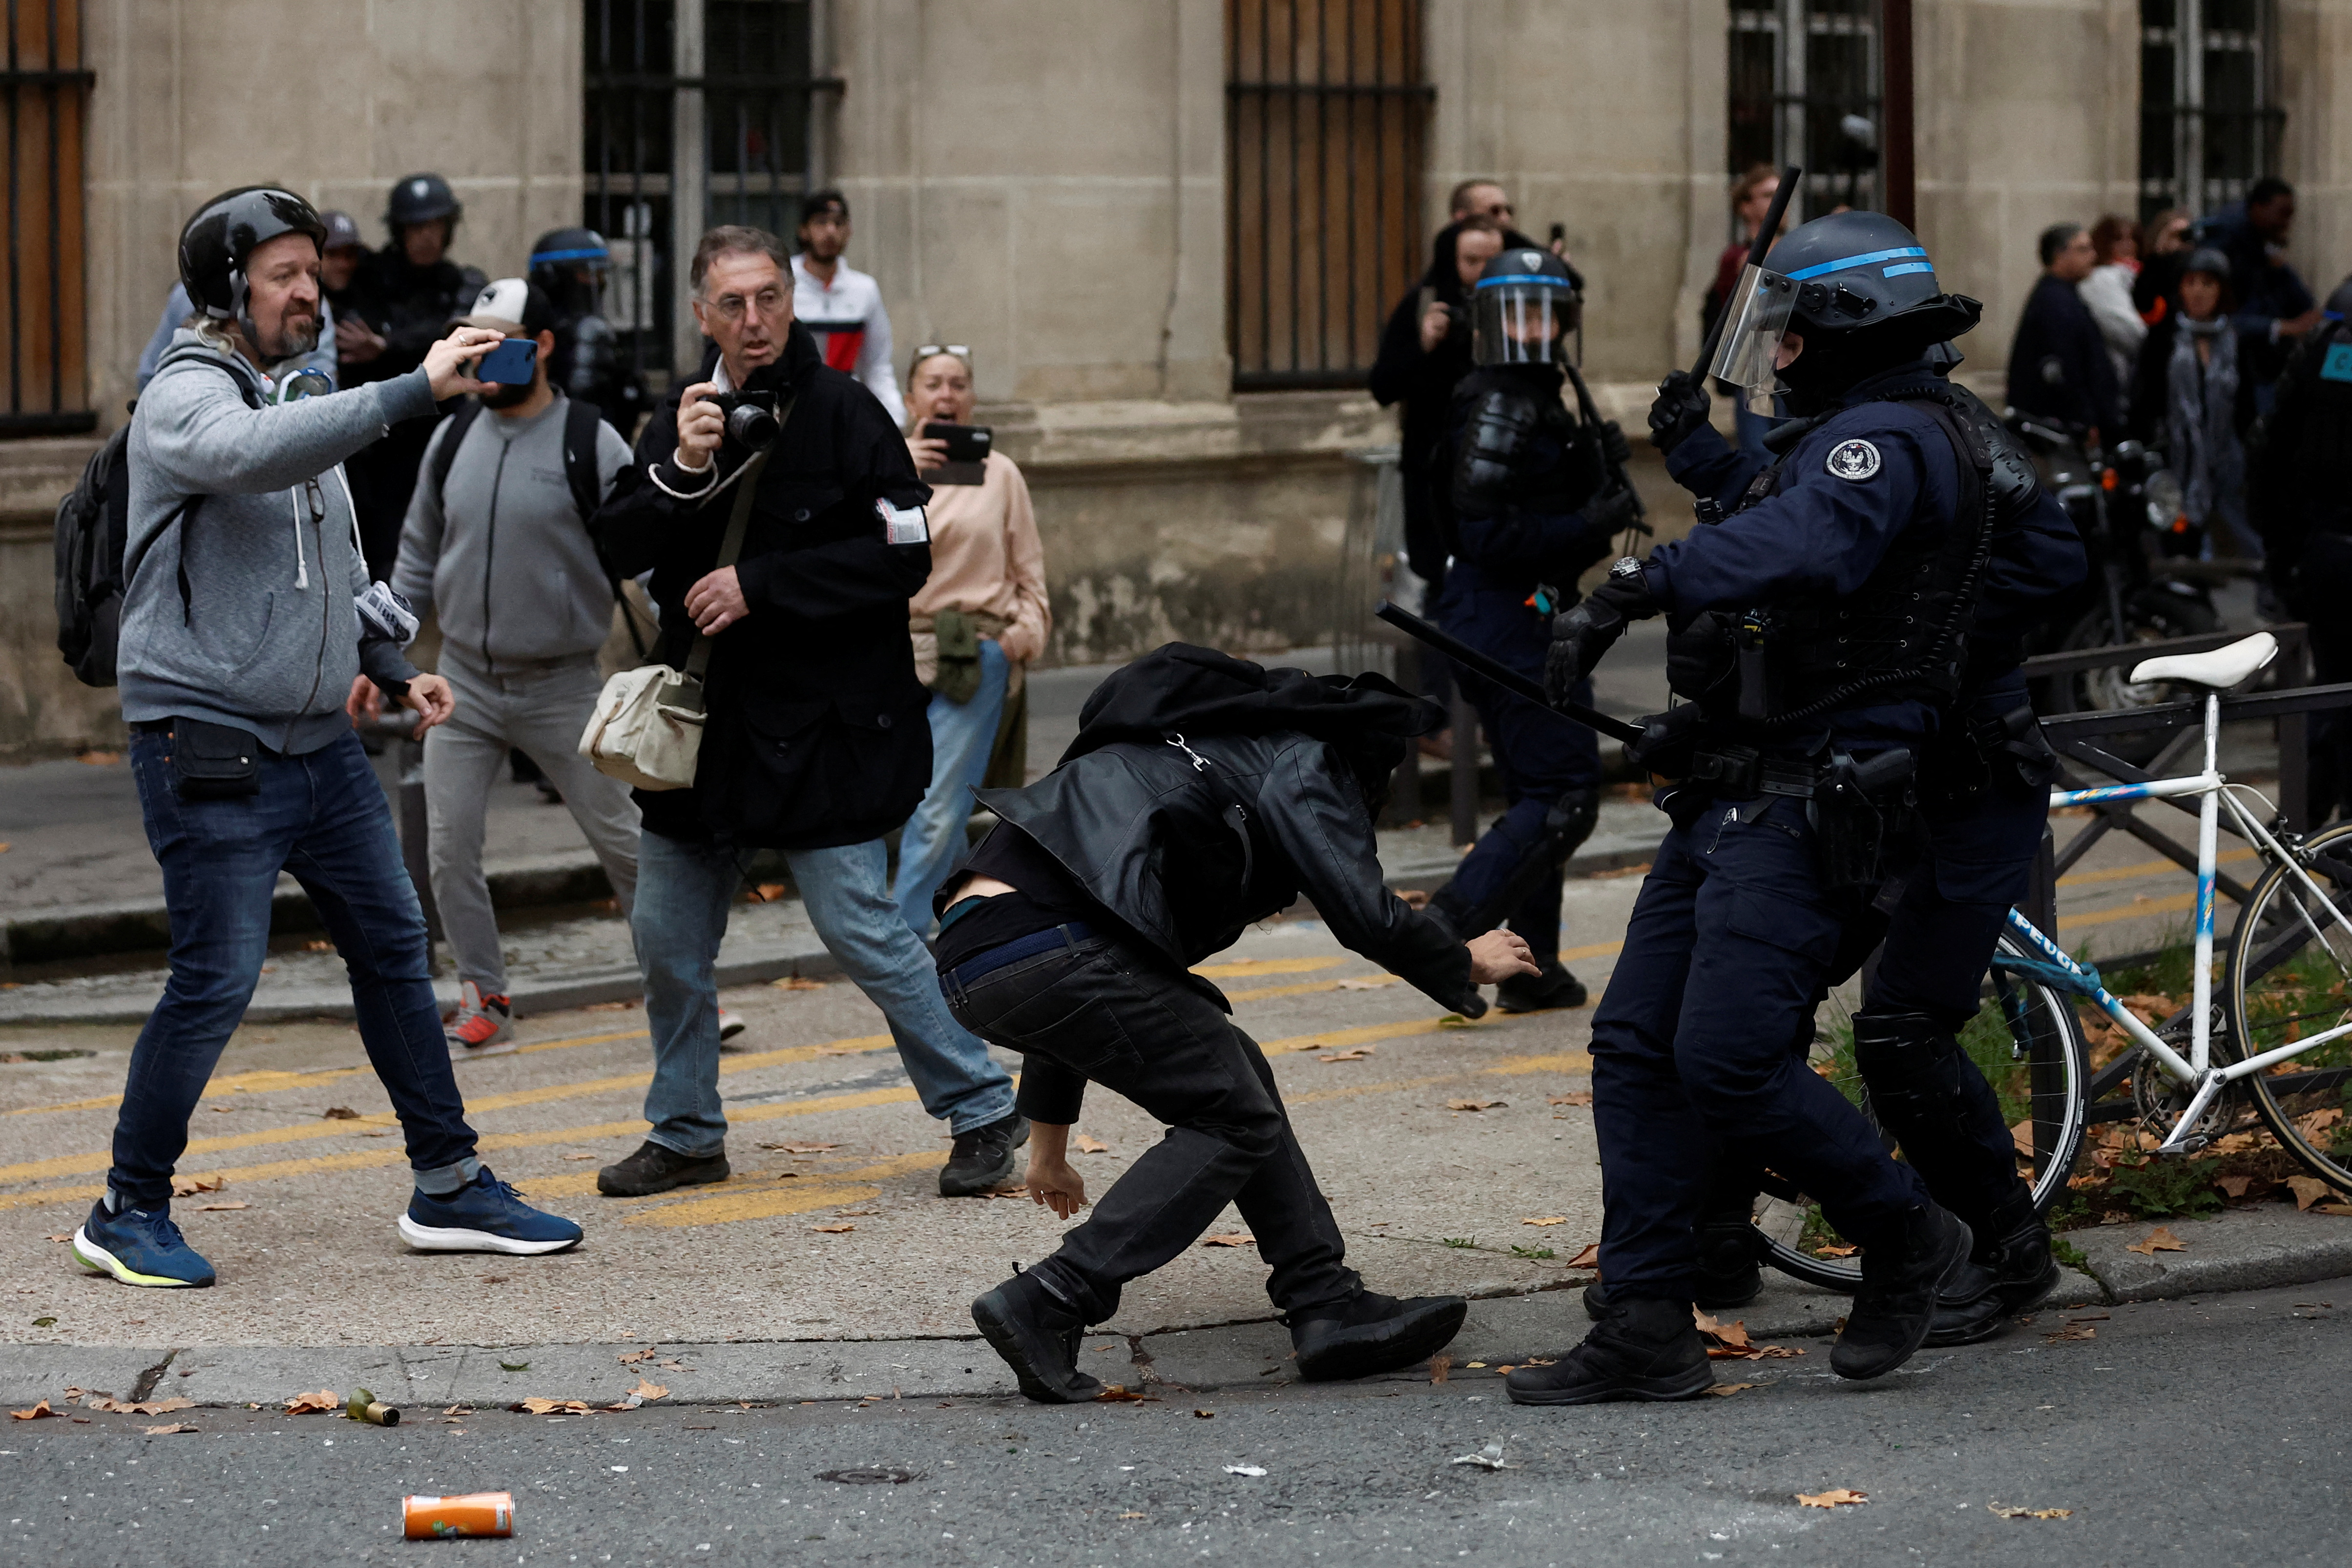 Des manifestants réprimés par la police à Paris.  Hugo en partie légèrement blessé (REUTERS / Benoit Tessier)